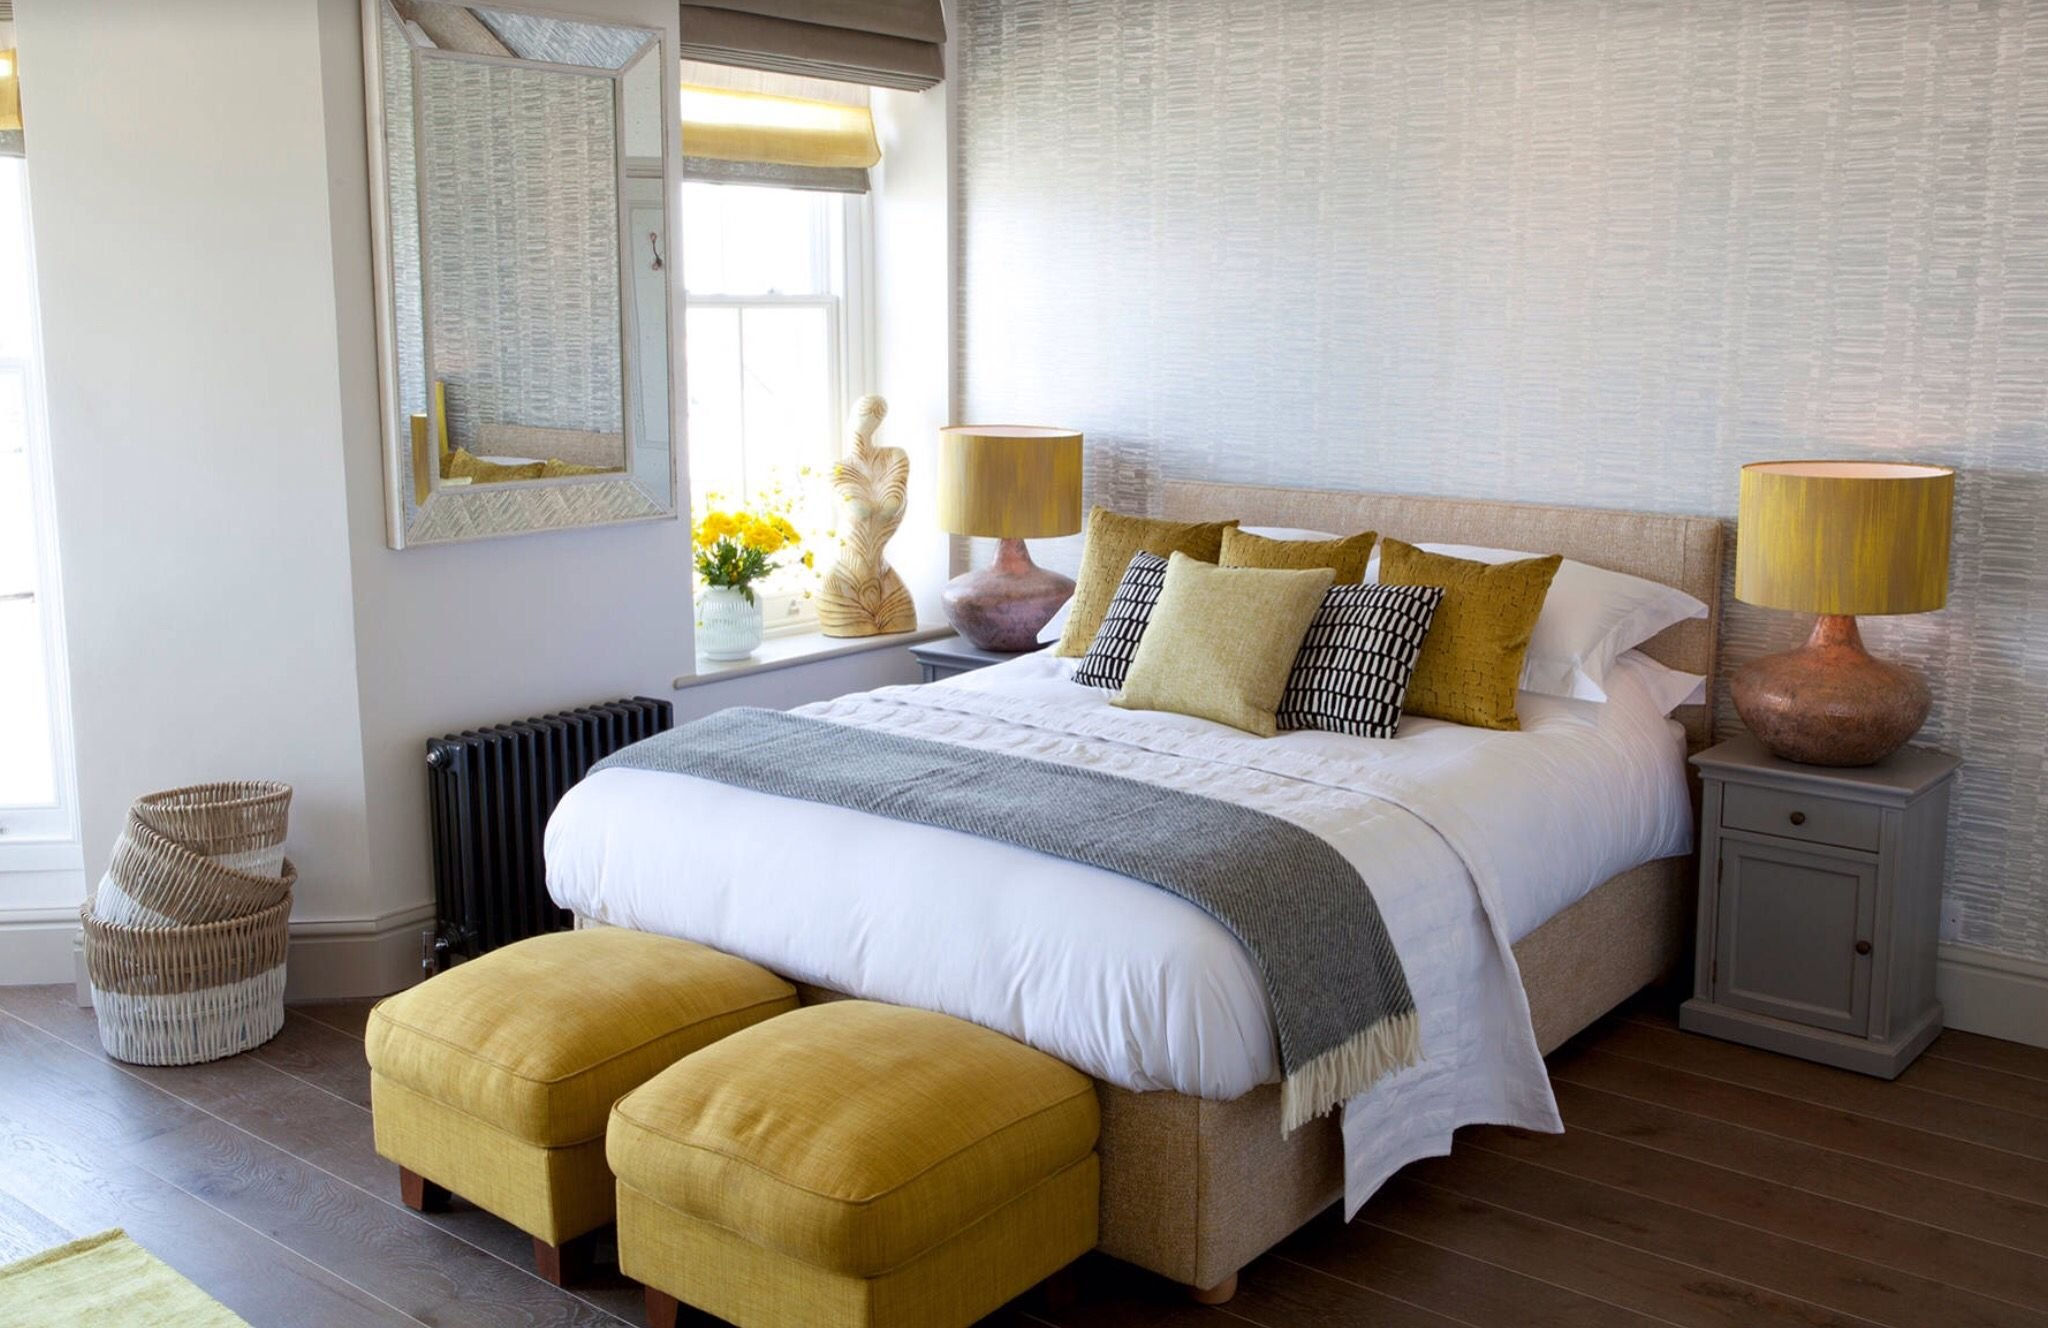 Bedroom pop. Желтый интерьер спальни. Спальня в скандинавском стиле. Спальня с желтыми акцентами. Спальня в желтом цвете.